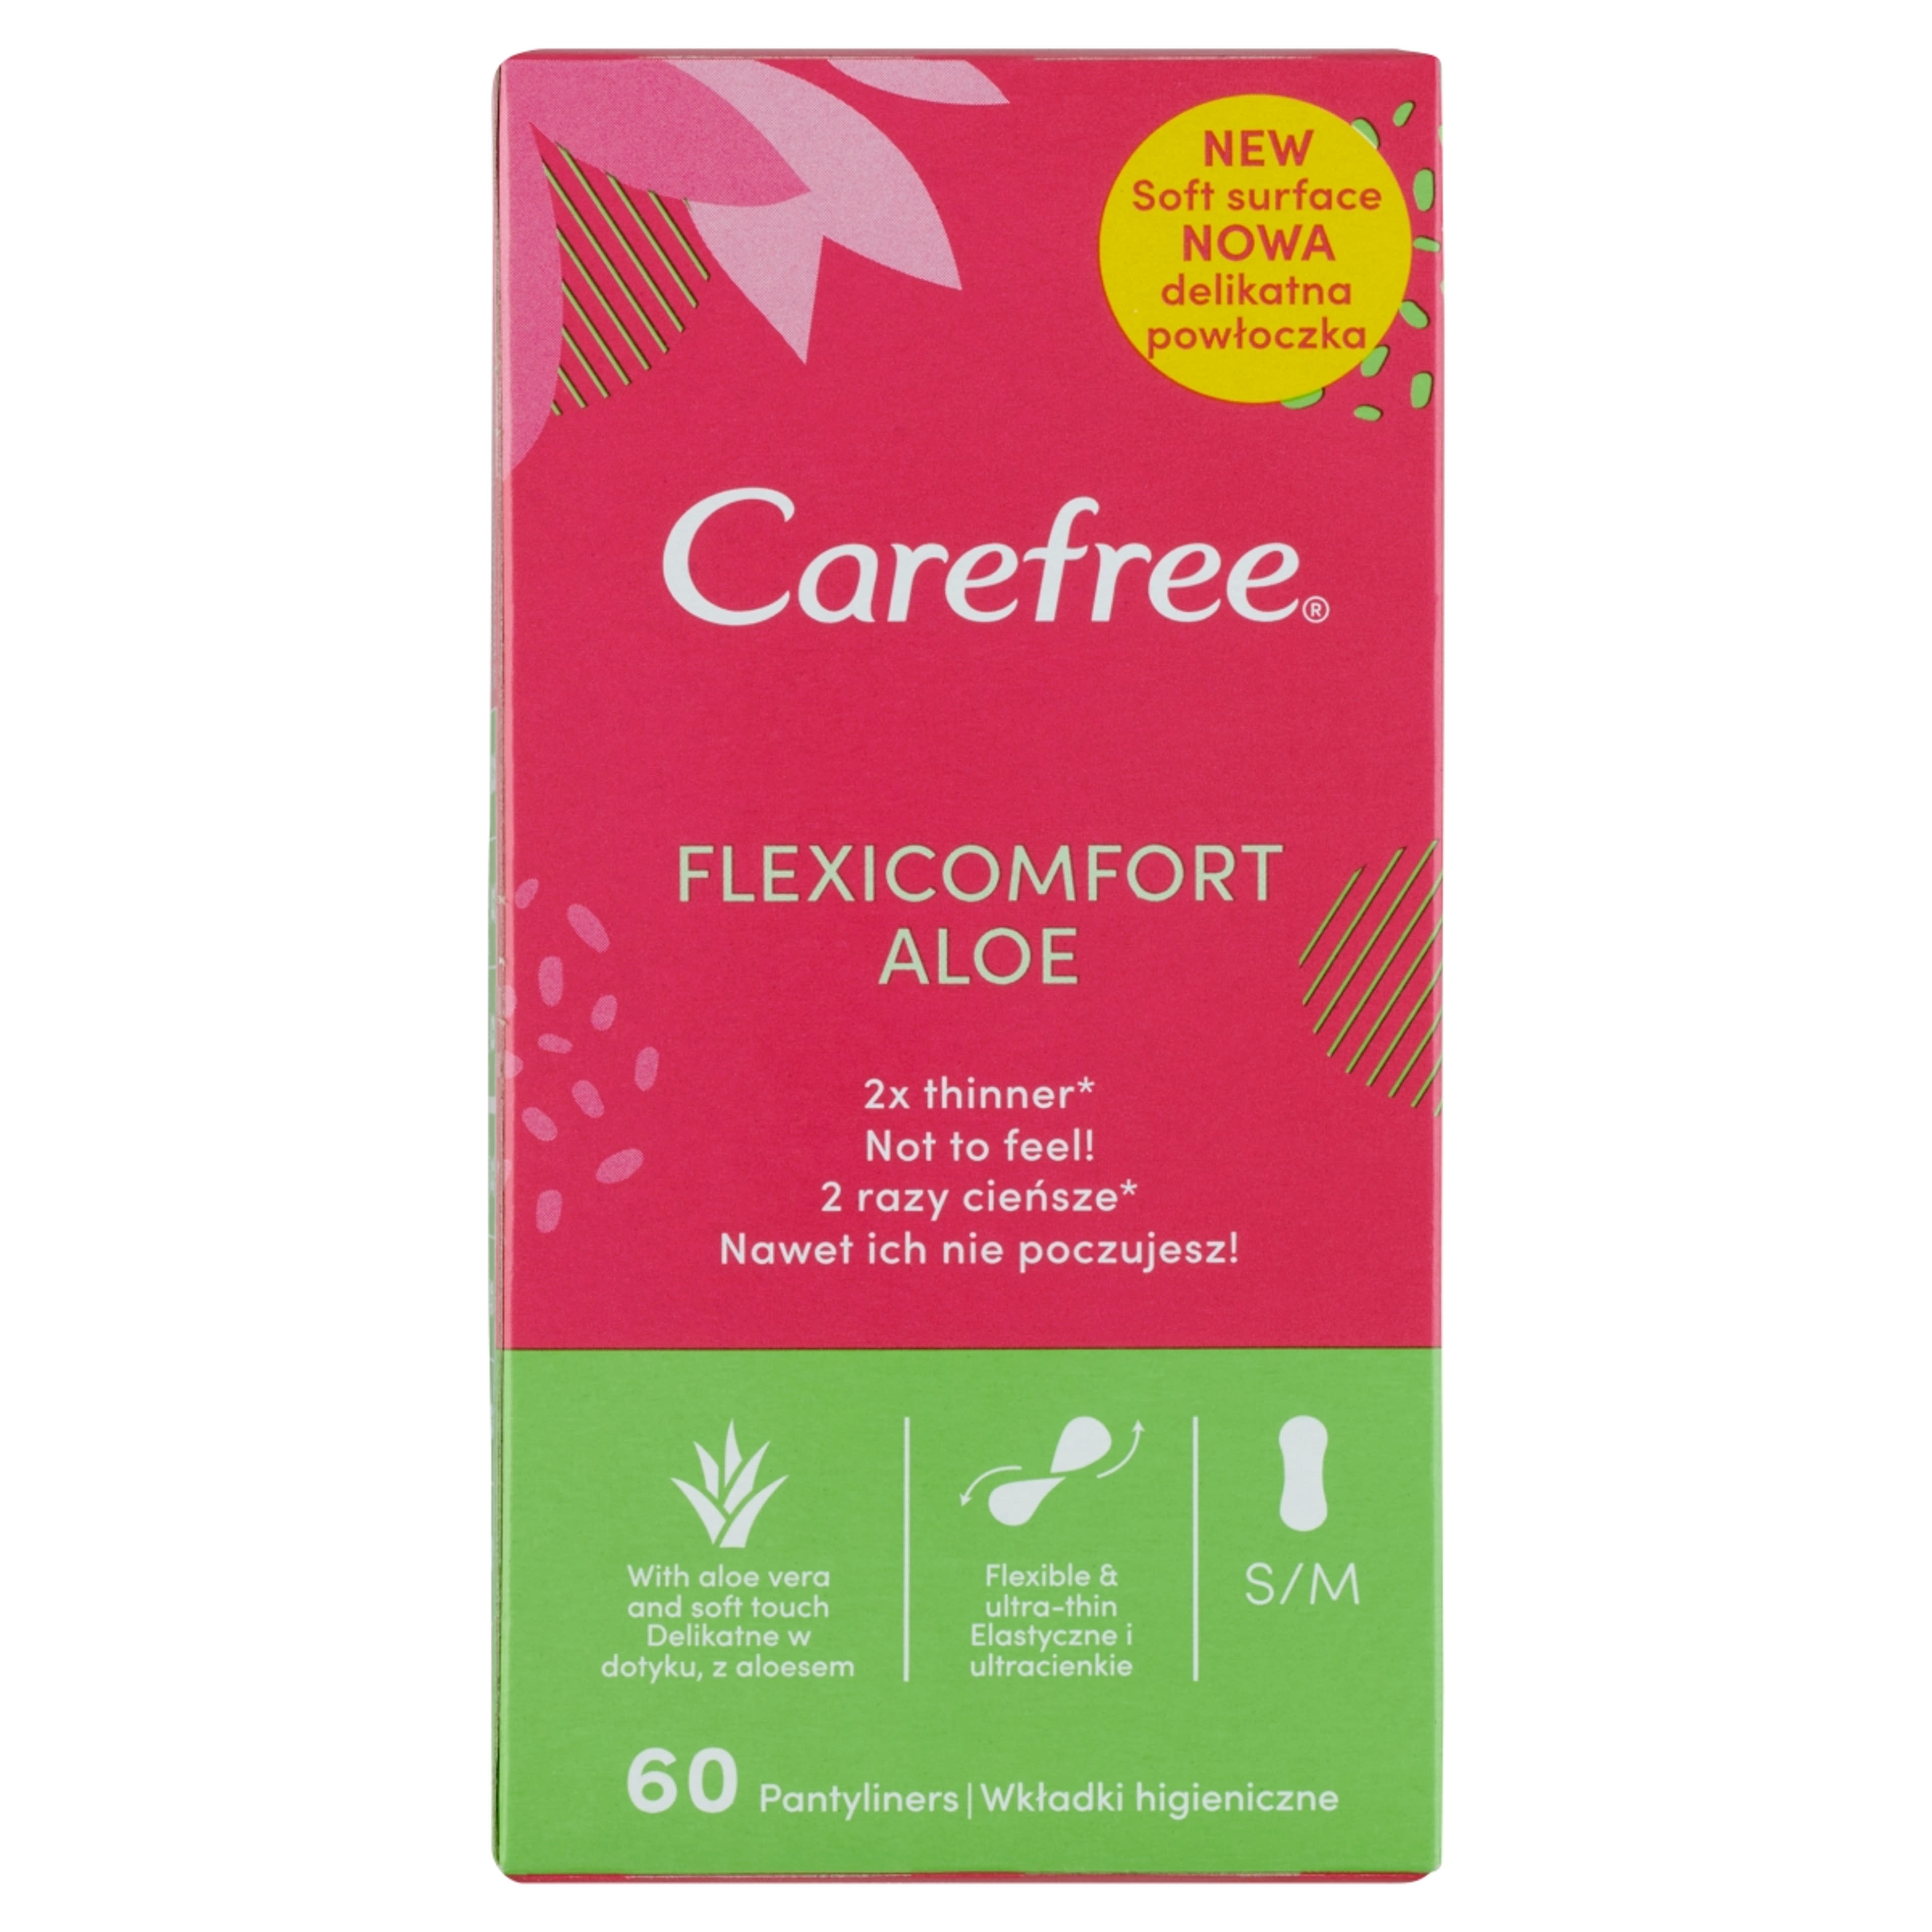 Carefree FlexiComfort Aloe tisztasági betét - 60 db